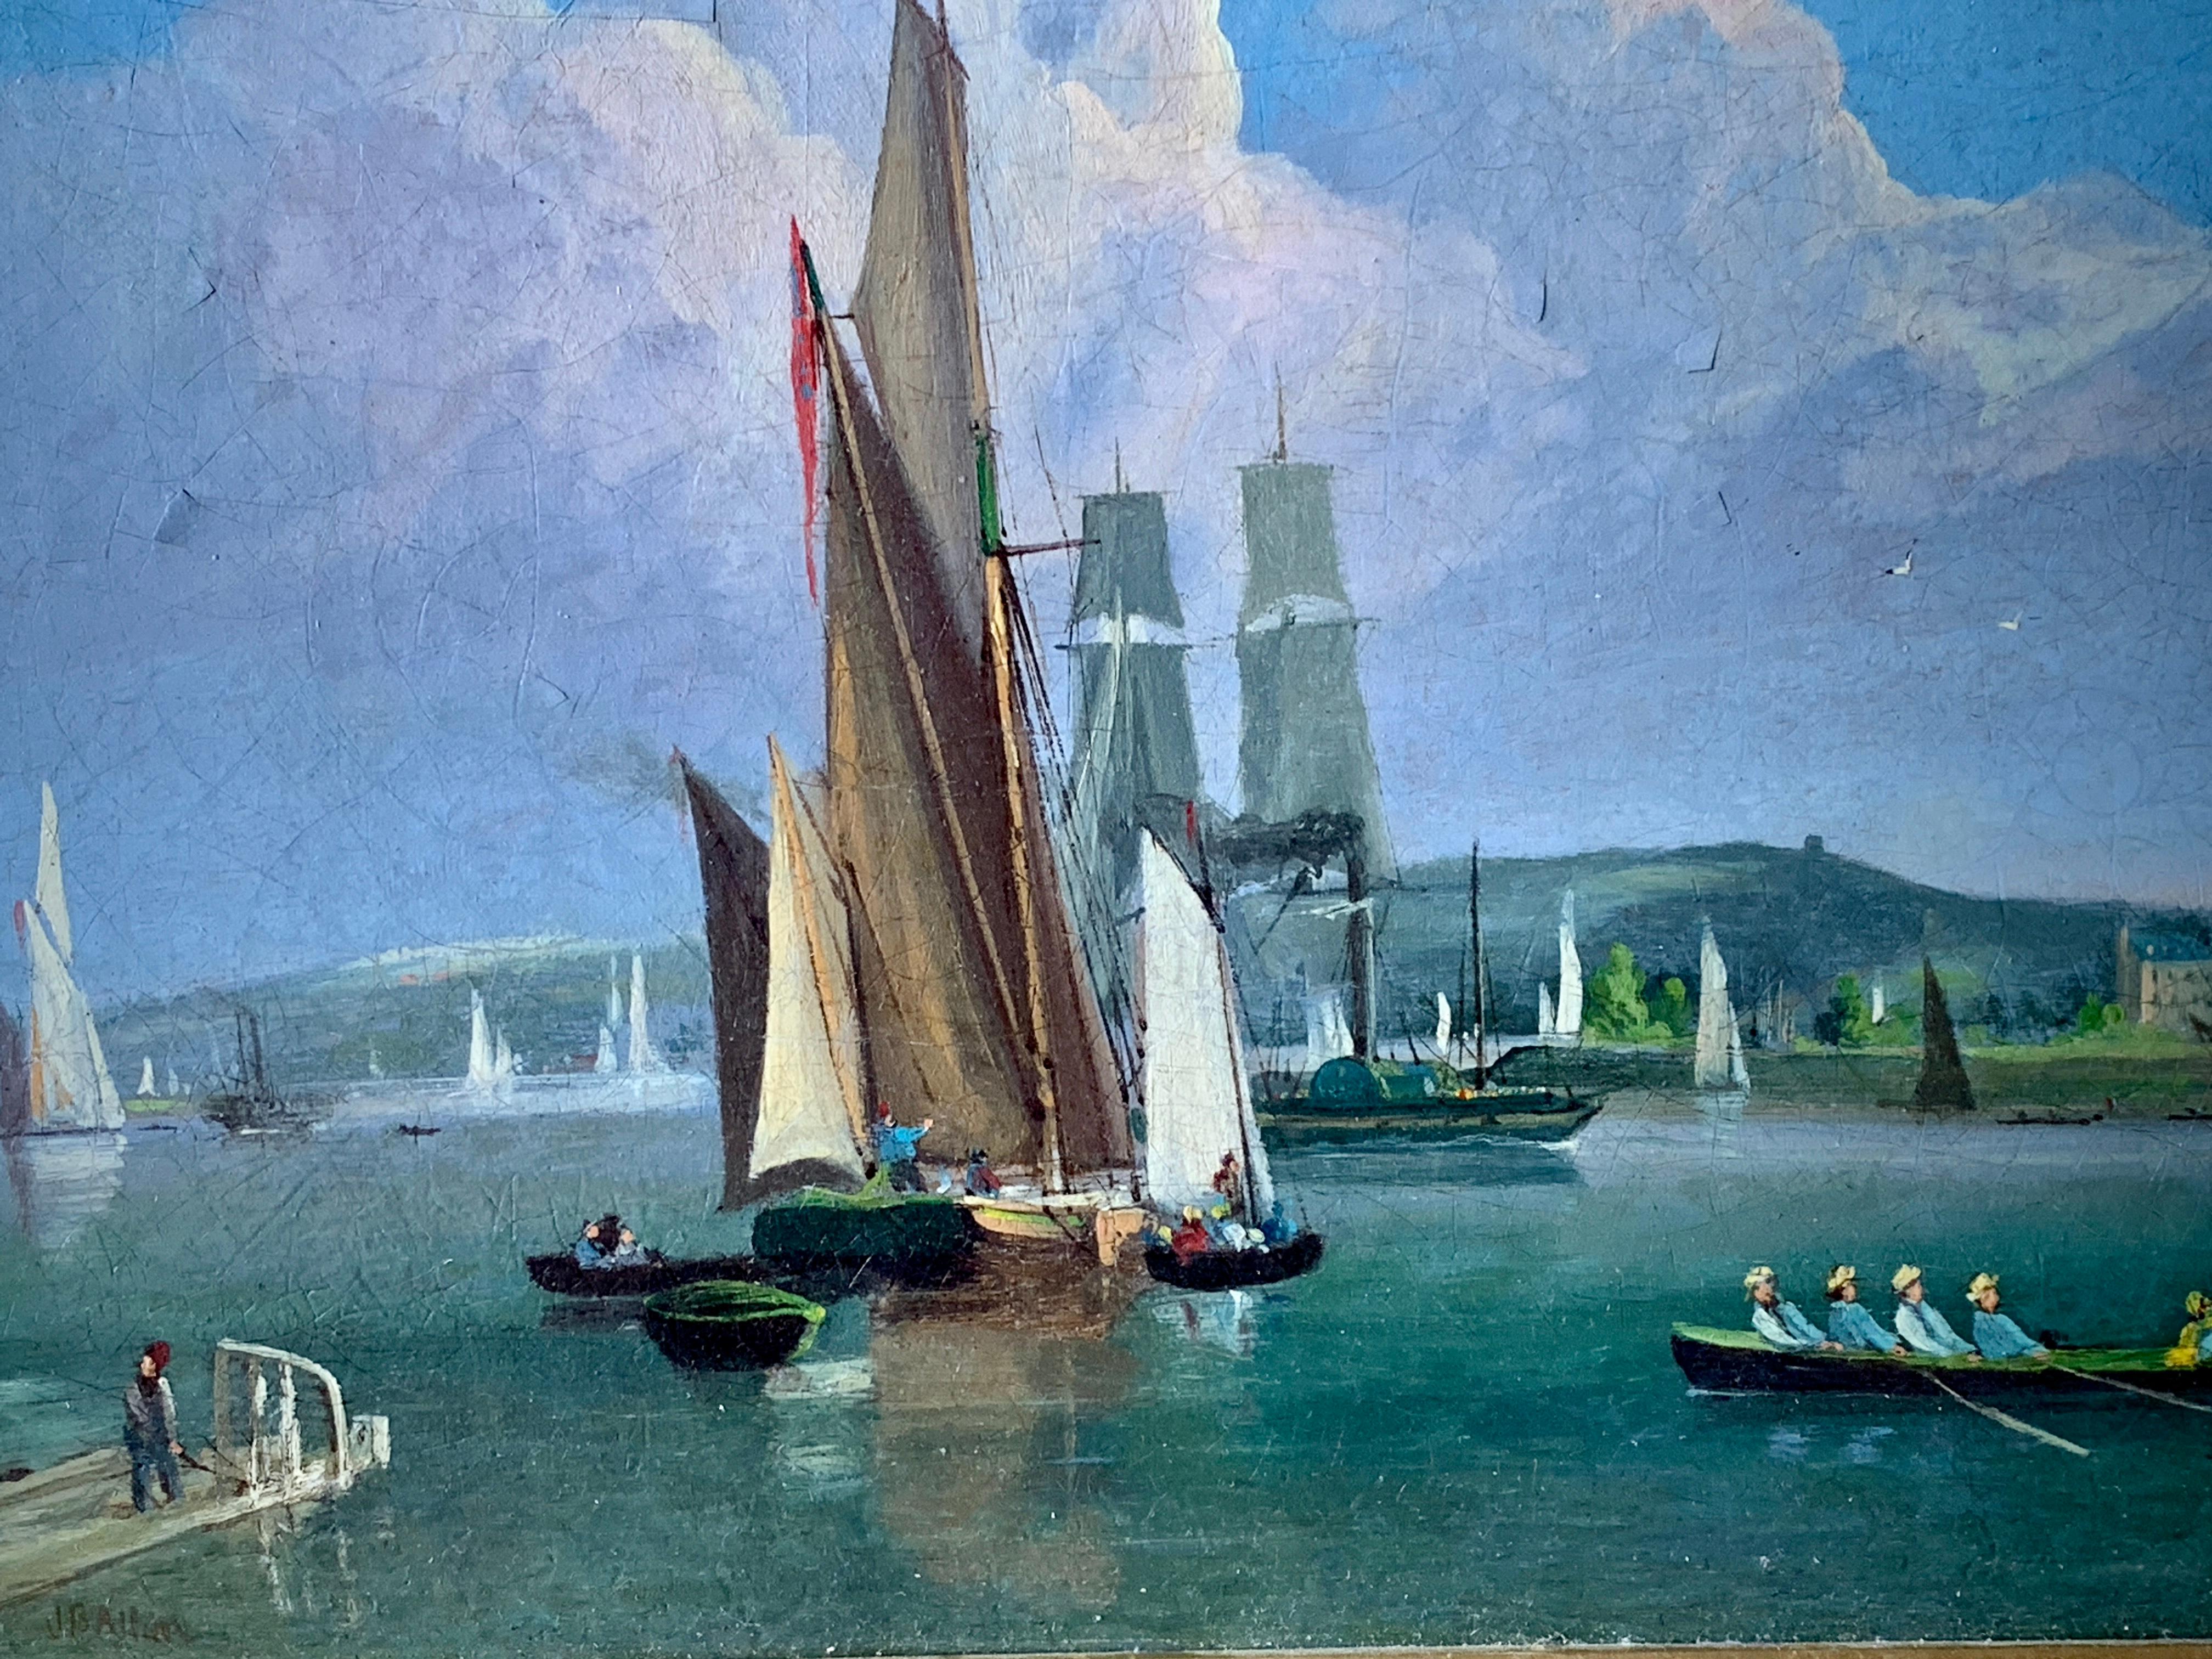 19th century boats